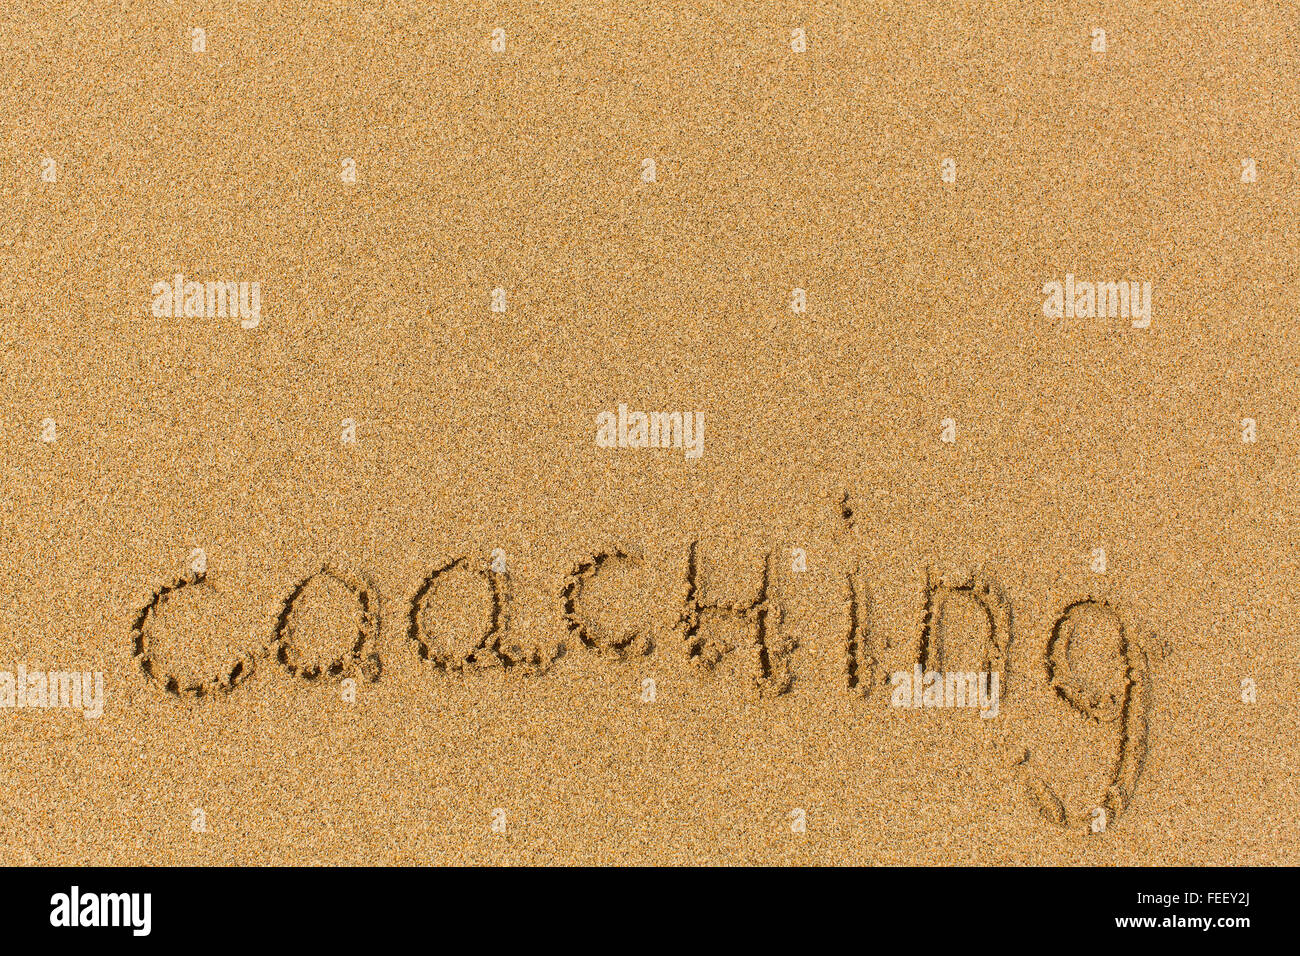 Coaching - Wort gezeichnet am Sandstrand. Hintergrund, Beschaffenheit des Sandes. Stockfoto